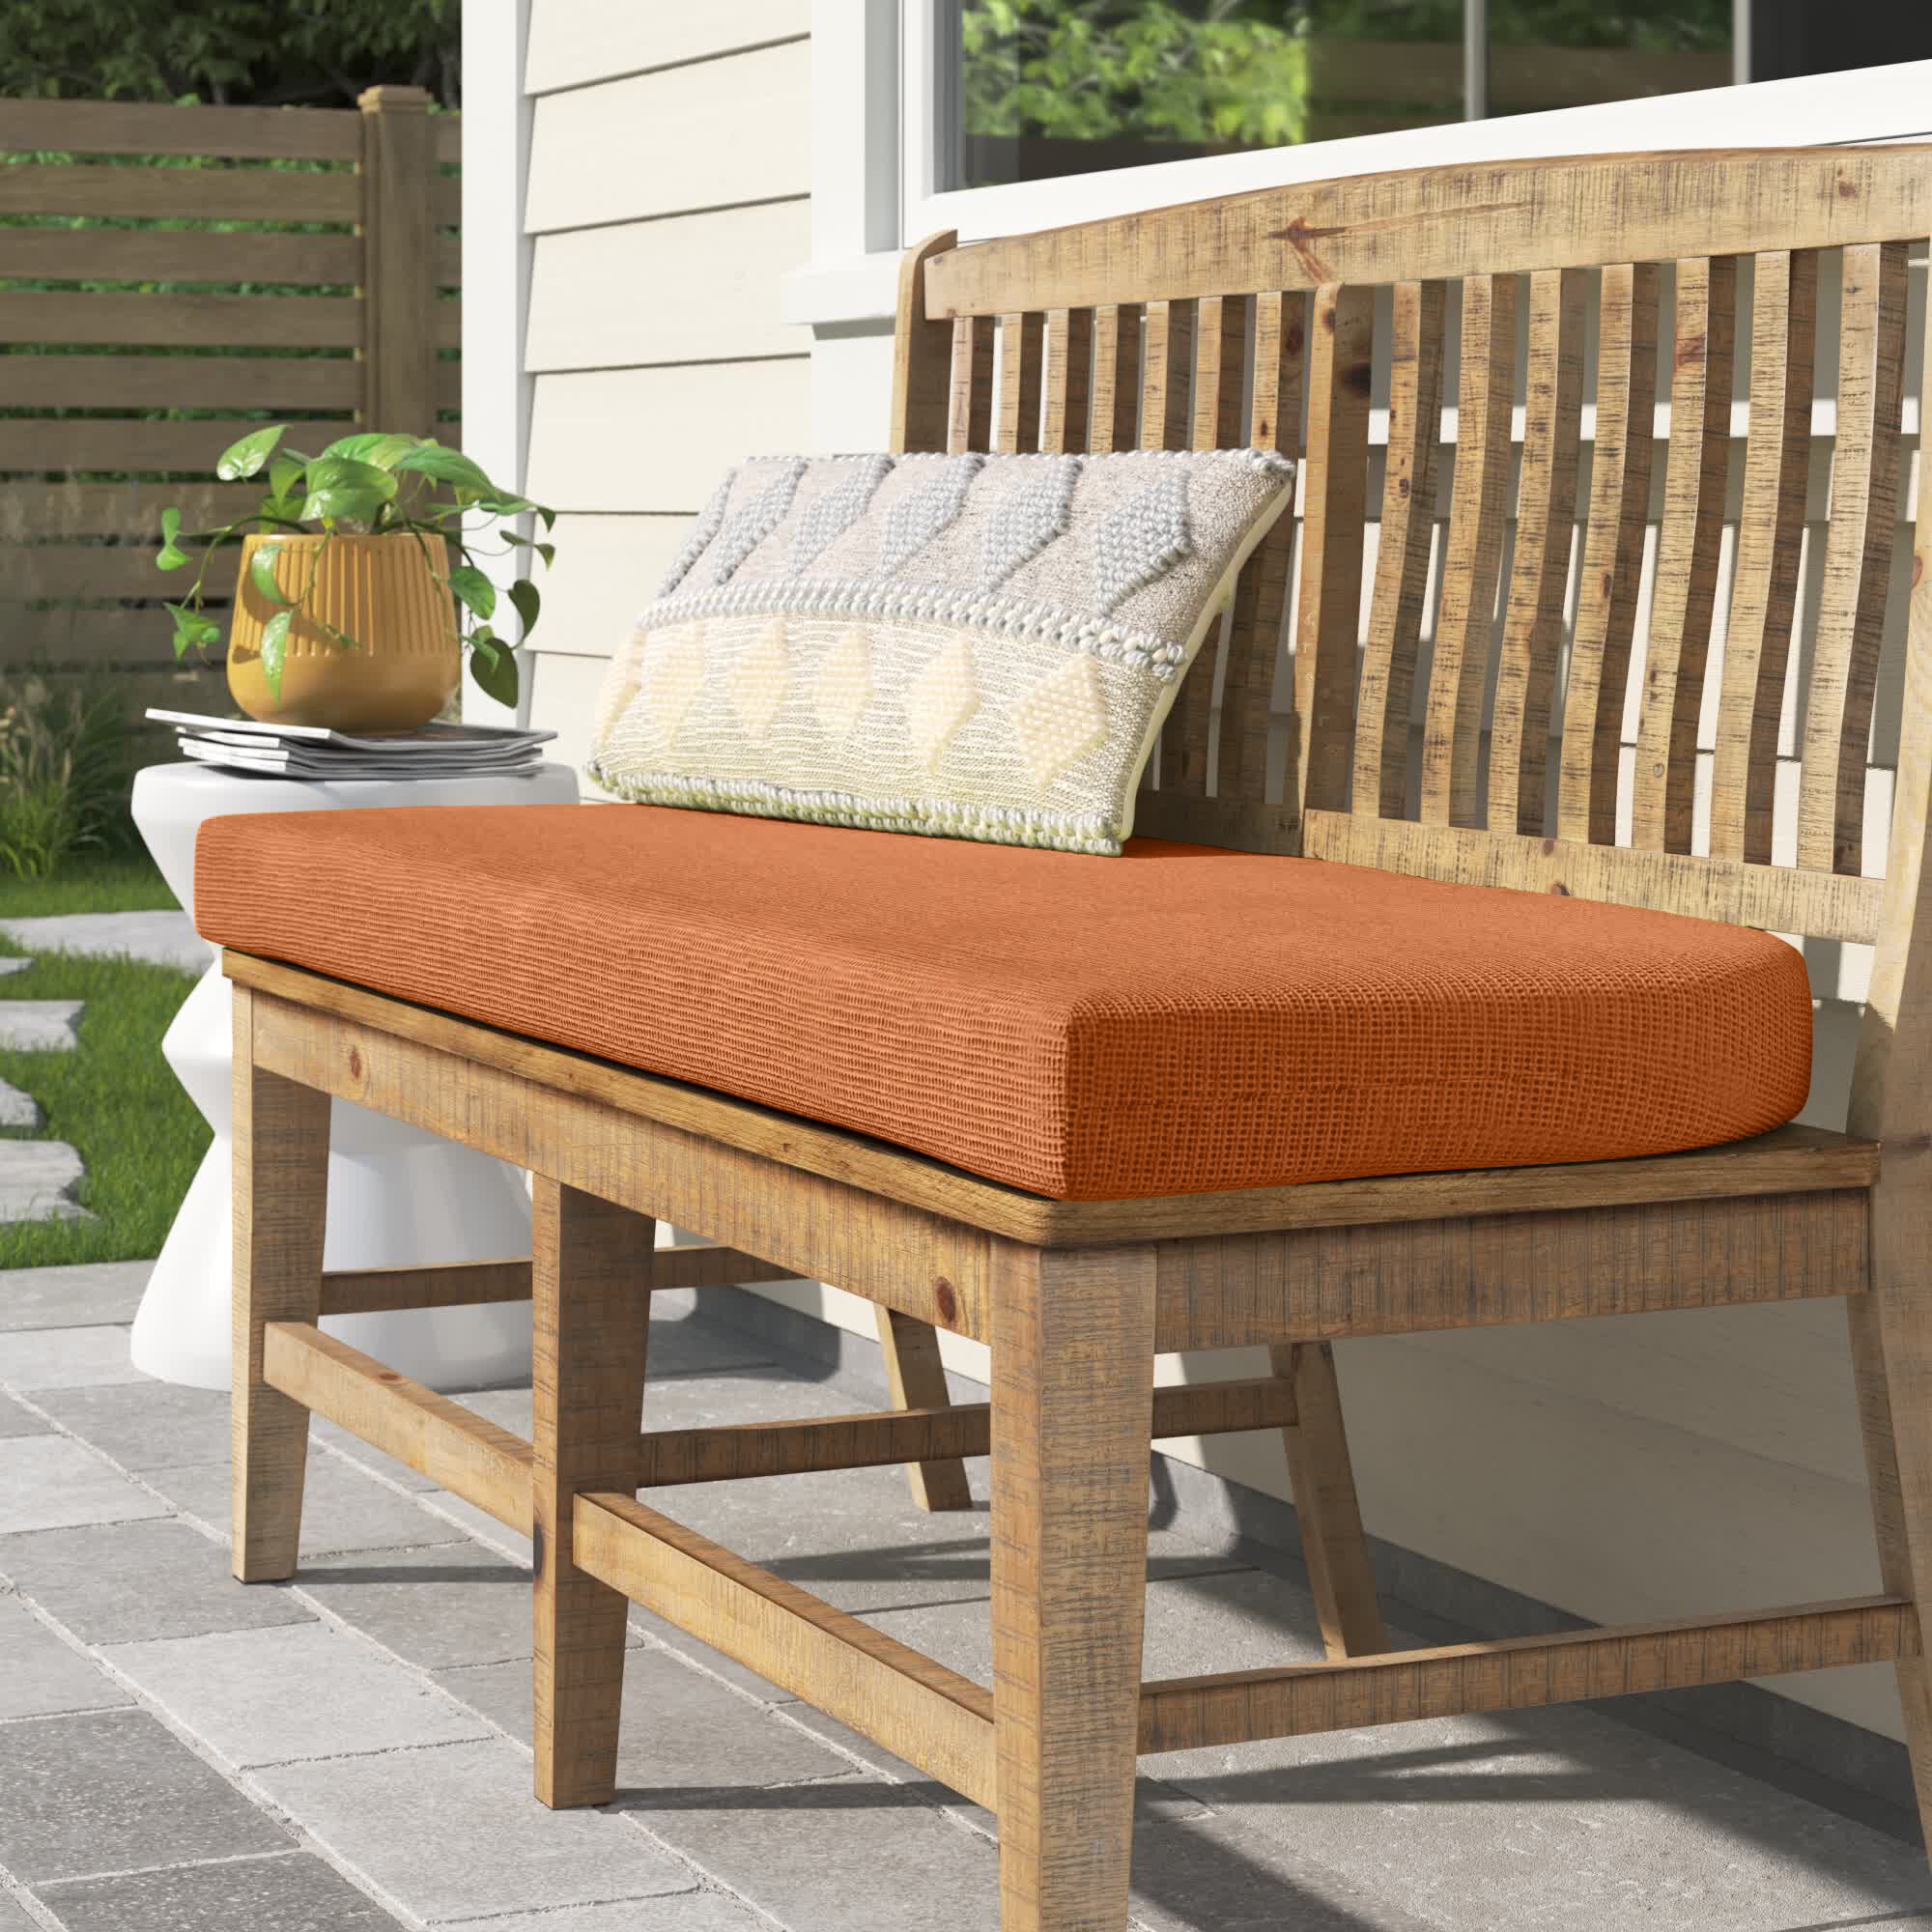 Outdoor bench cushion ≡ Sand cushion